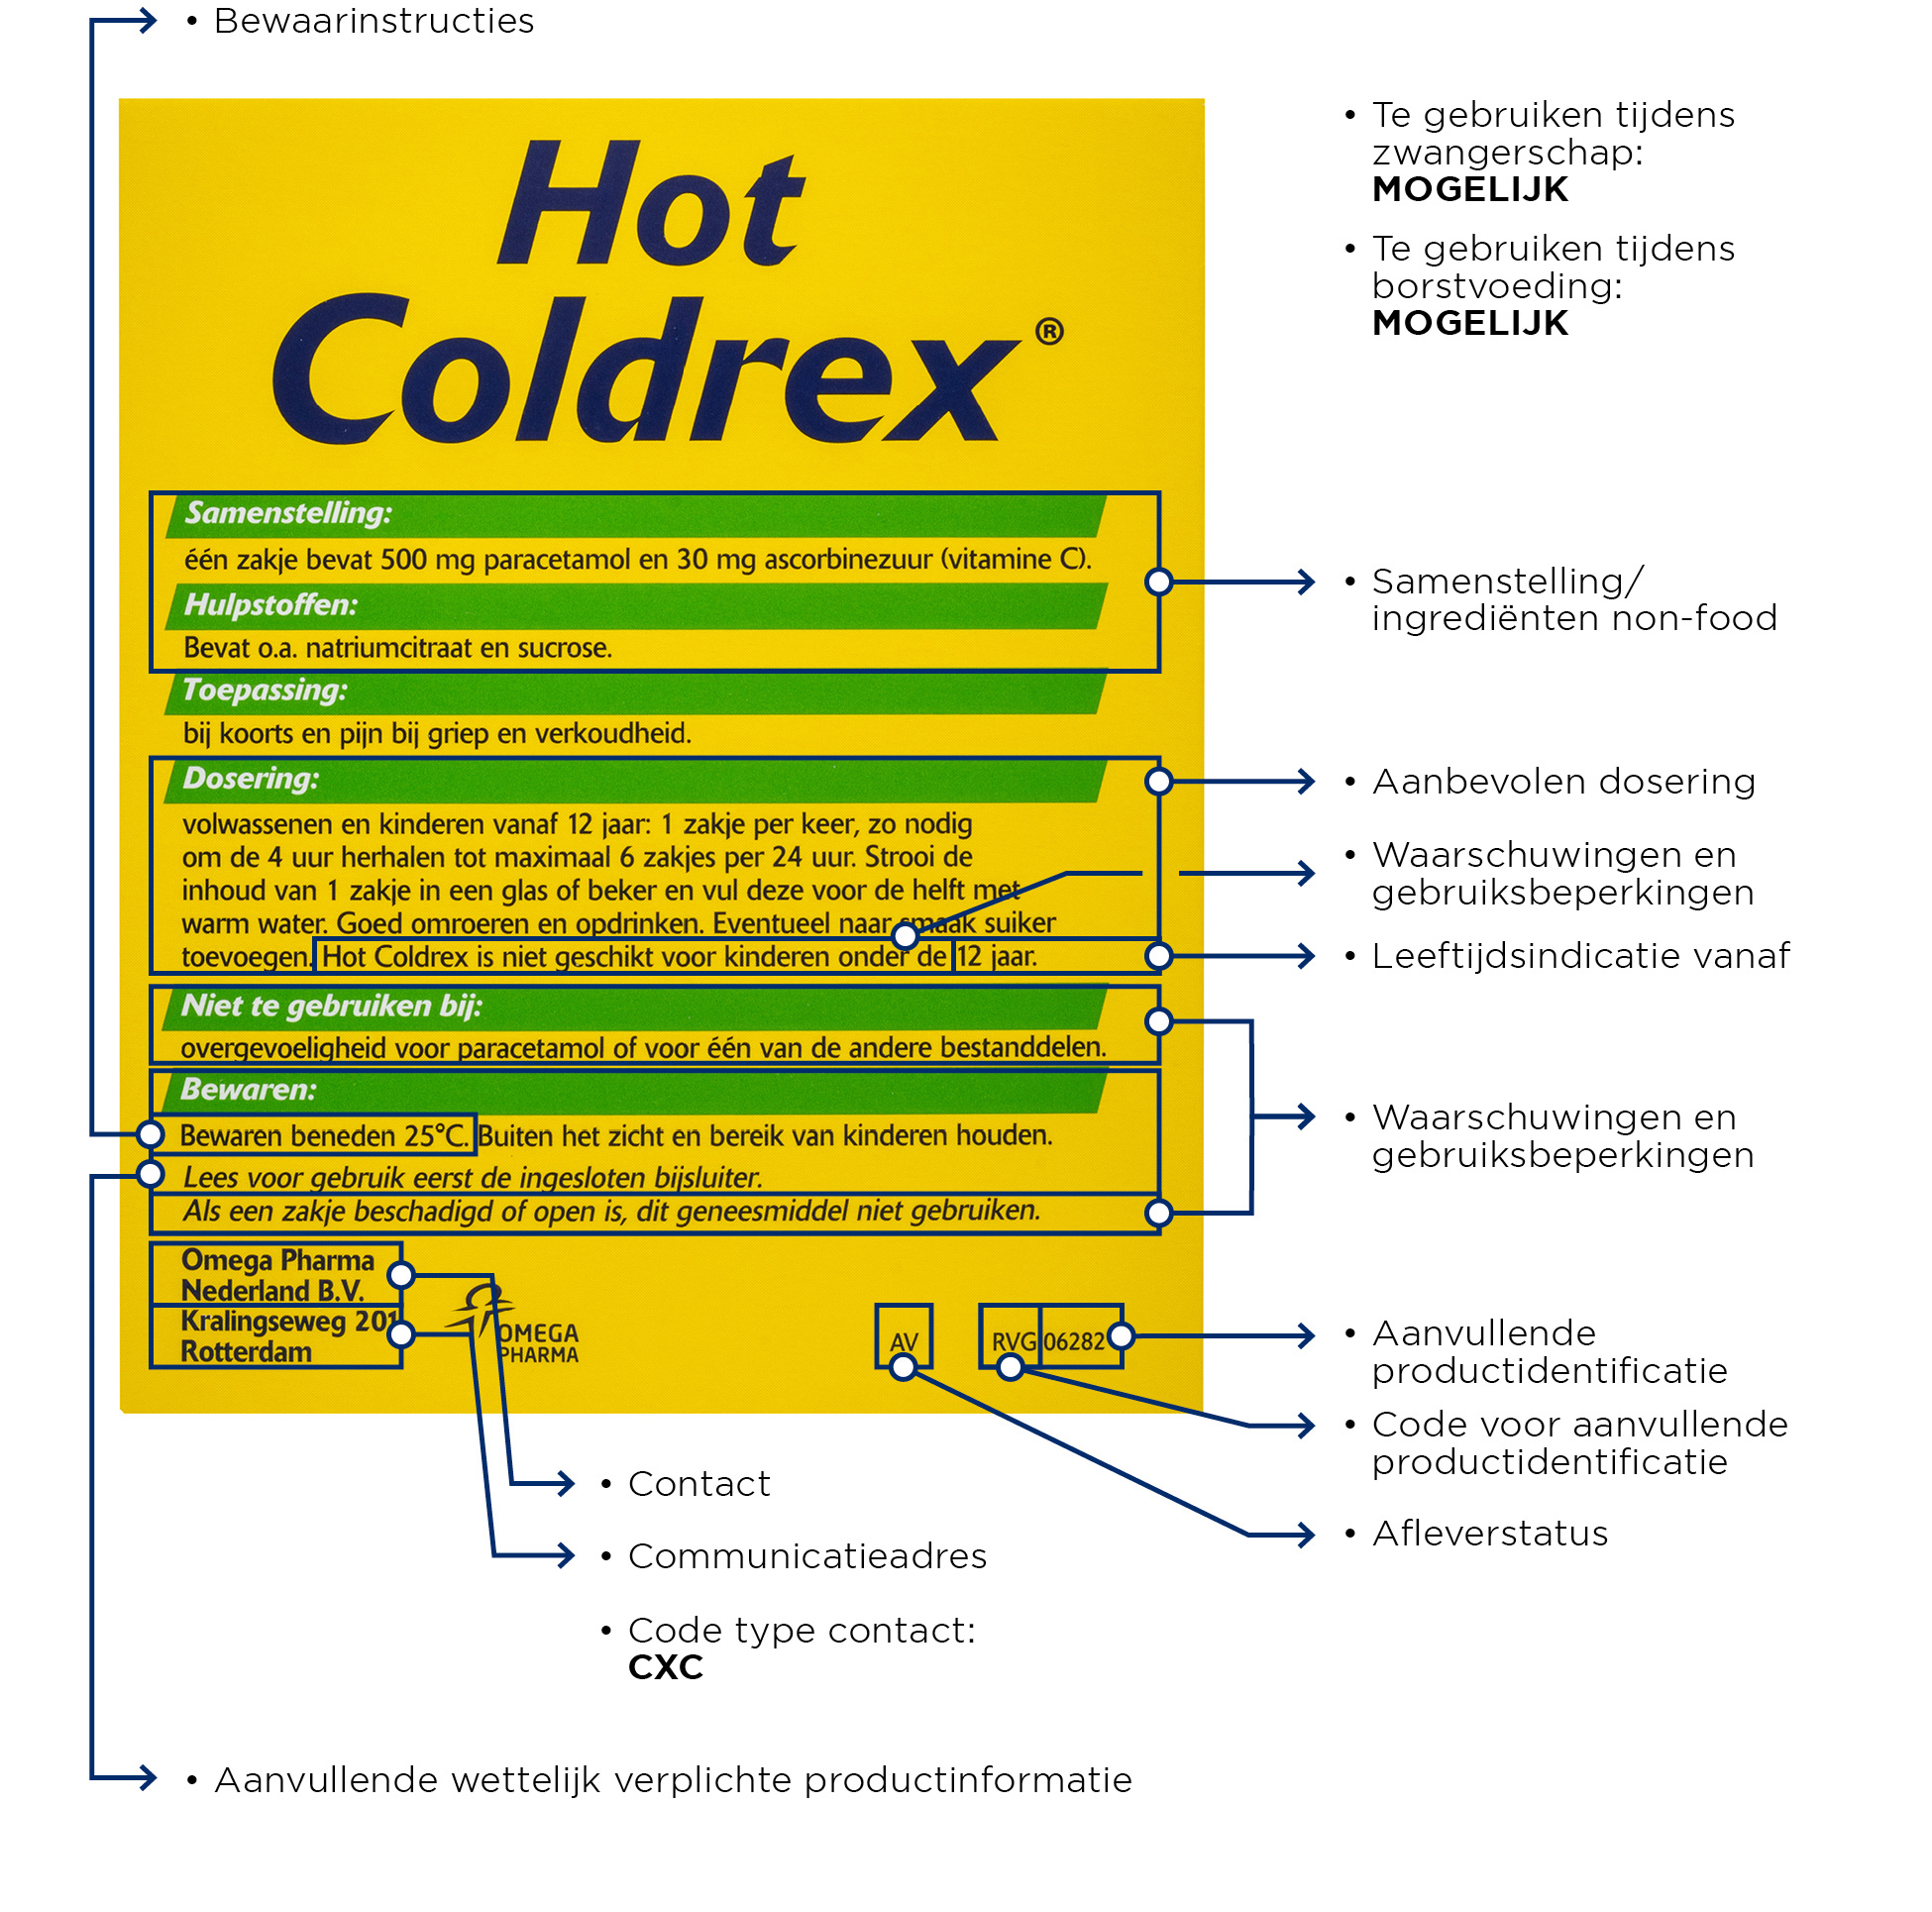 Etiketvelden Zelfzorggeneesmiddel Hotcoldrex ZONDER NUMMERS2